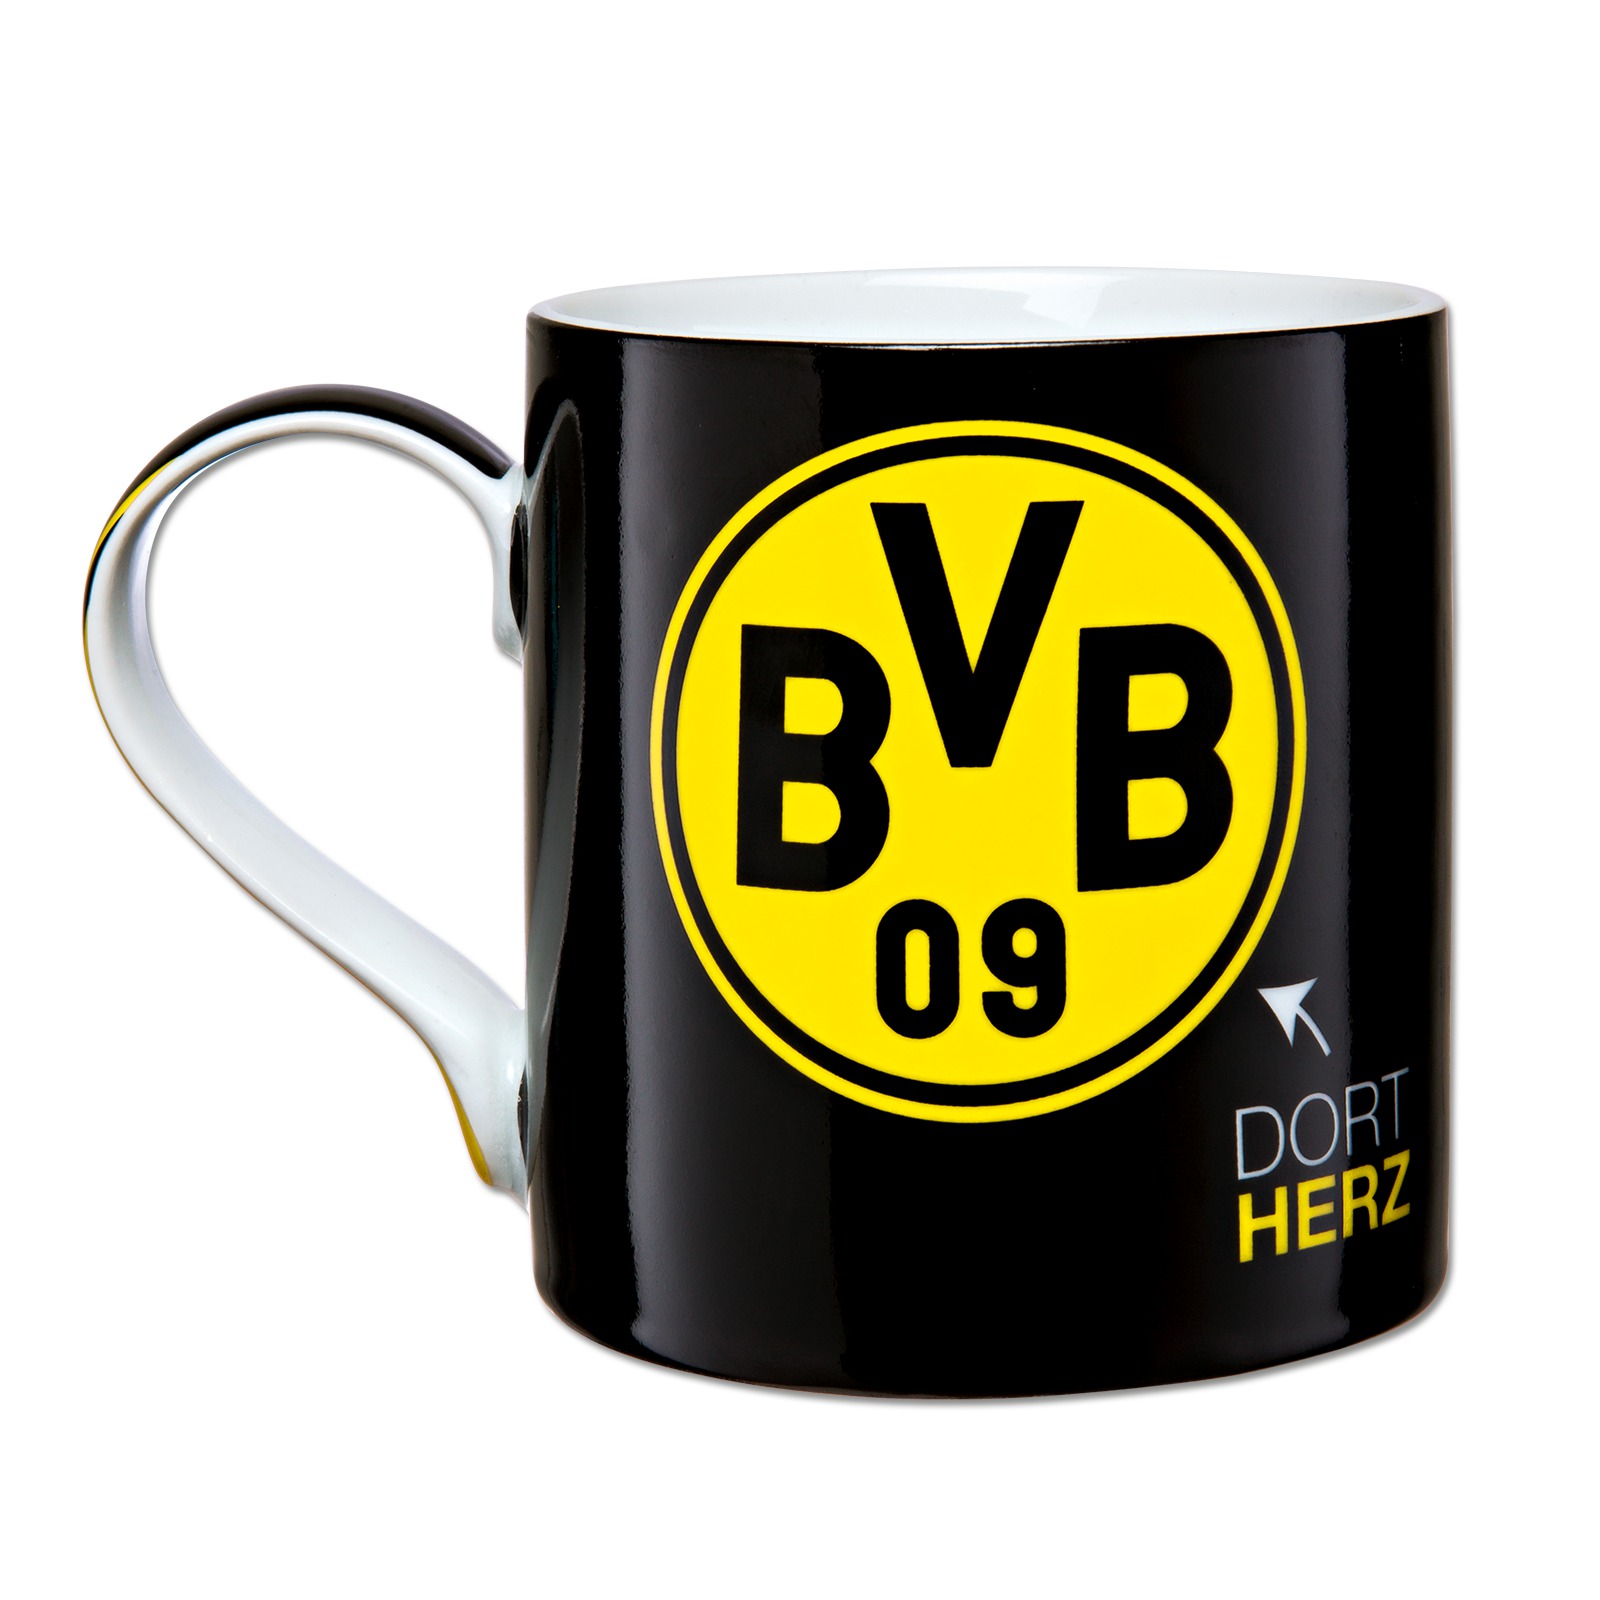 plus Lesezeichen I love Kindertasse 0,2l BVB 09 Borussia Dortmund Emma Tasse 